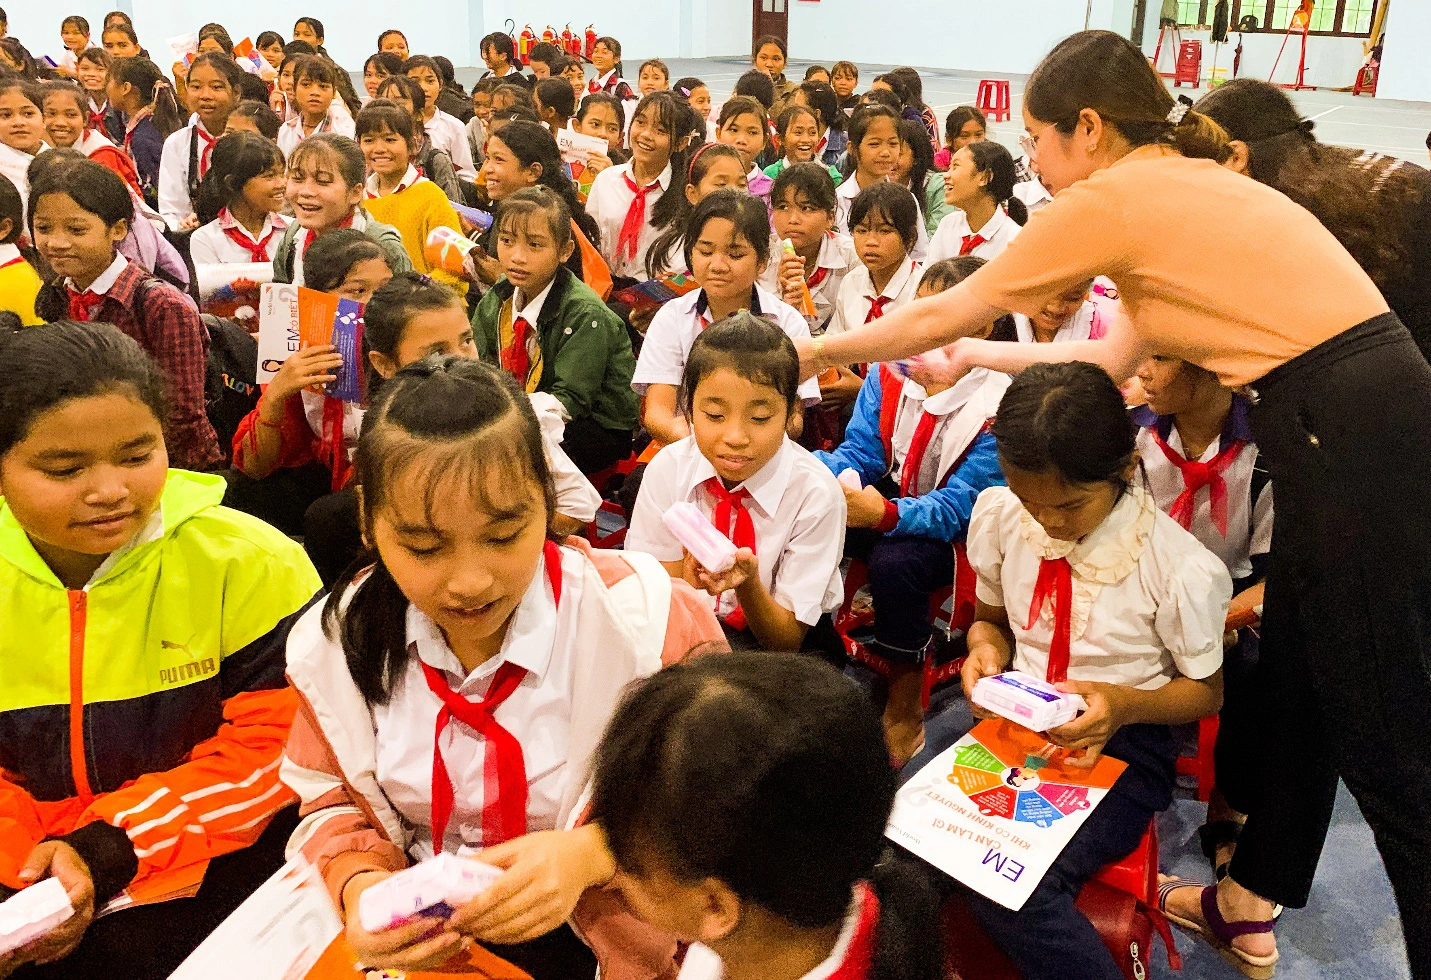 Trao tặng hơn 326.000 gói băng vệ sinh giúp các em gái khó khăn tại miền Trung - Ảnh 3.